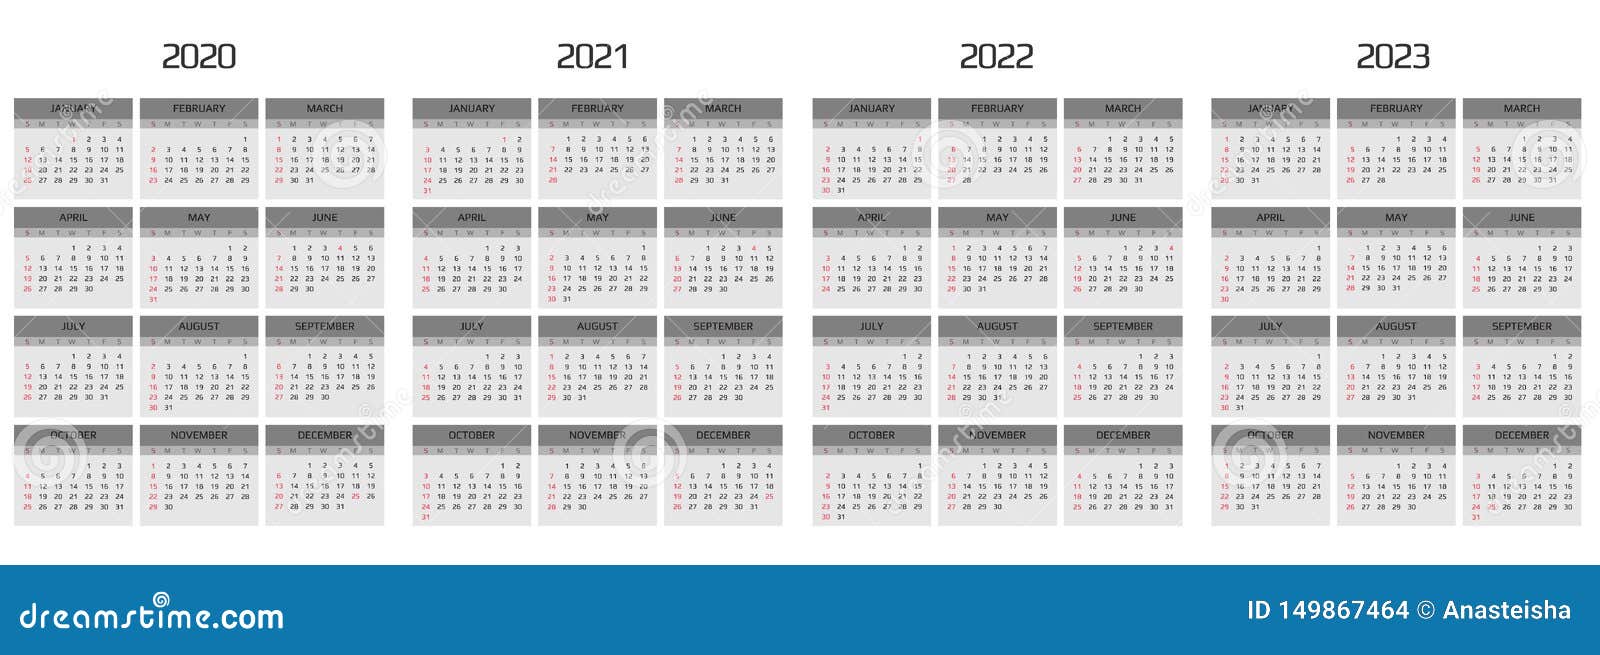 2 неделя 2020. Календарь 2020 2021 2022. Календарь 2021 2022 2023. Календарь 2020-2022. Календарь 2020-2023.